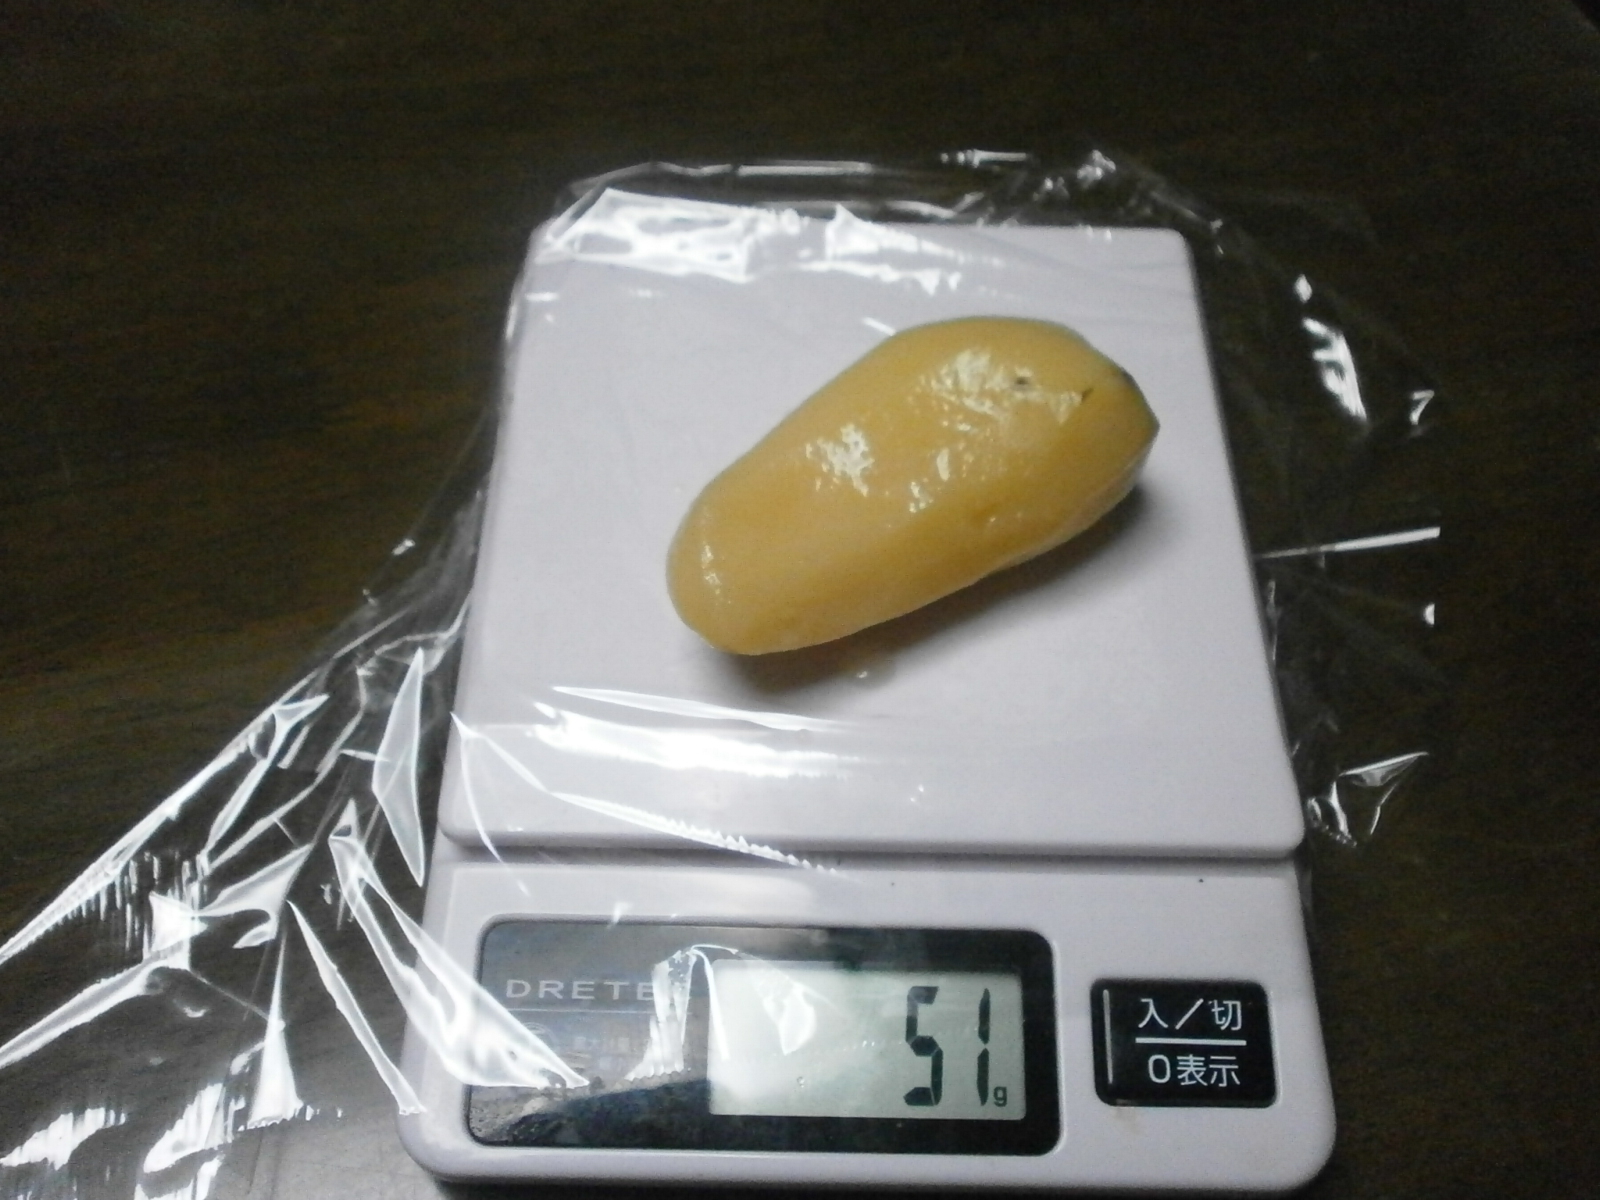 Di patate (58g/51g)